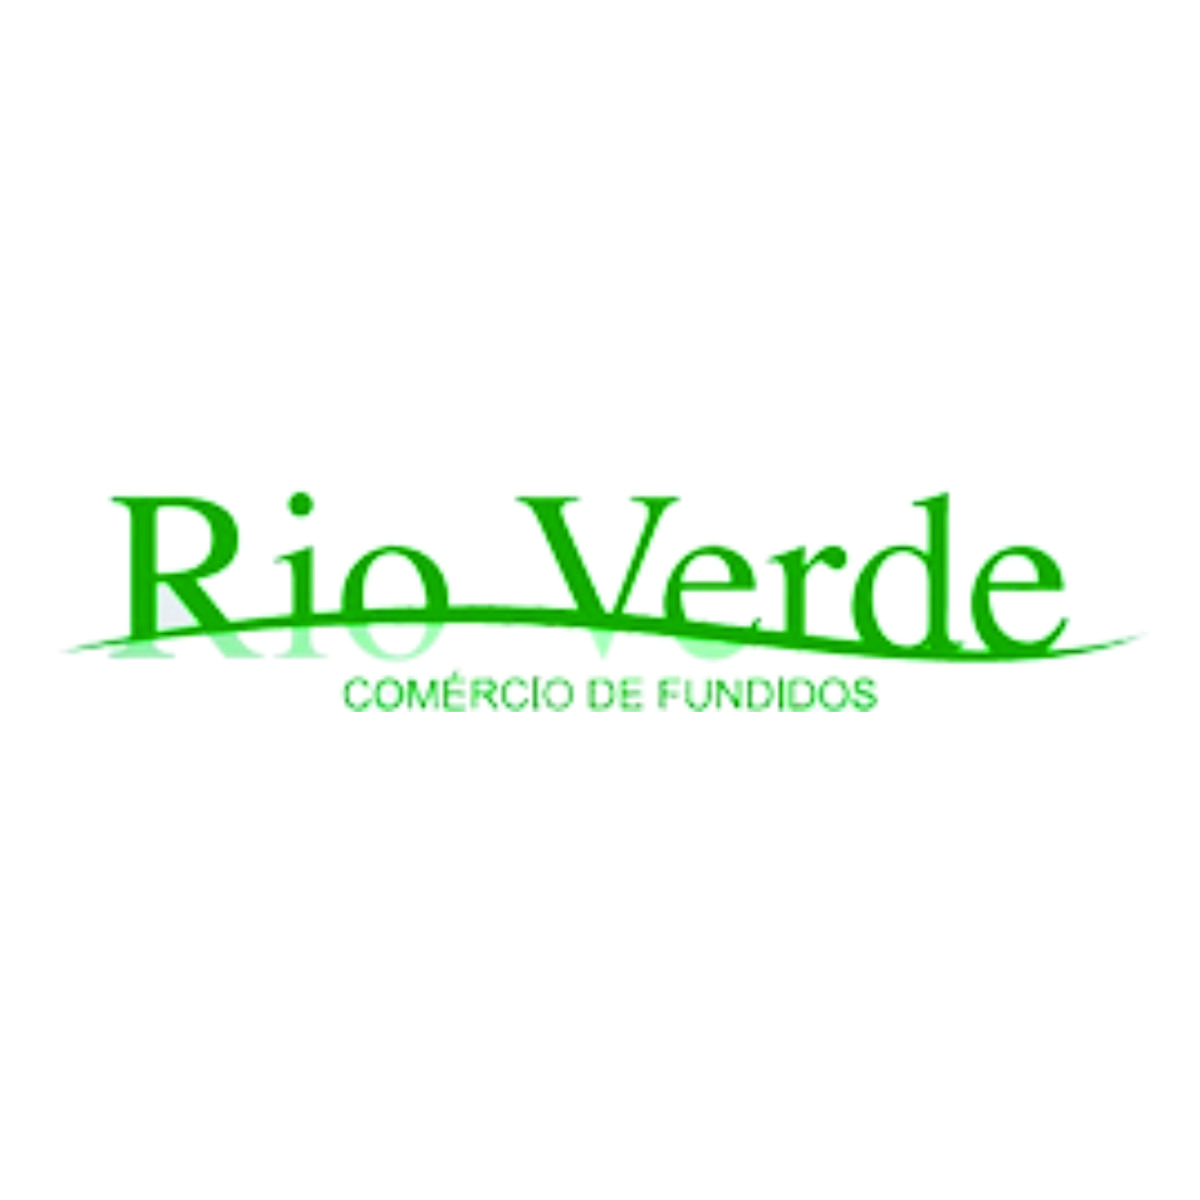 Comércio de Fundidos Rio Verde Ltda